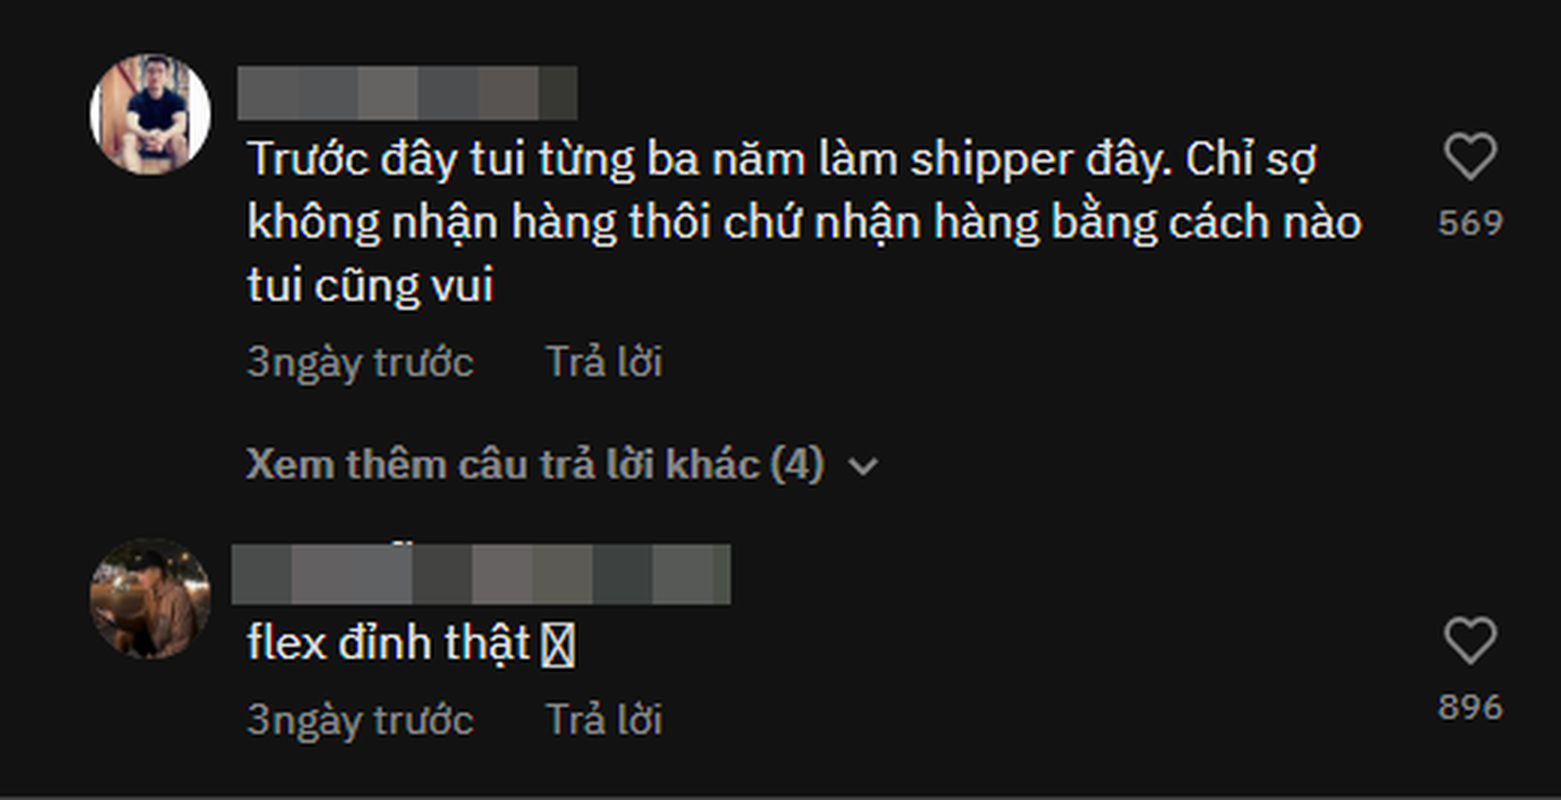 Nhan hang shipper kieu “flex”, co gai khien netizen tranh cai-Hinh-6